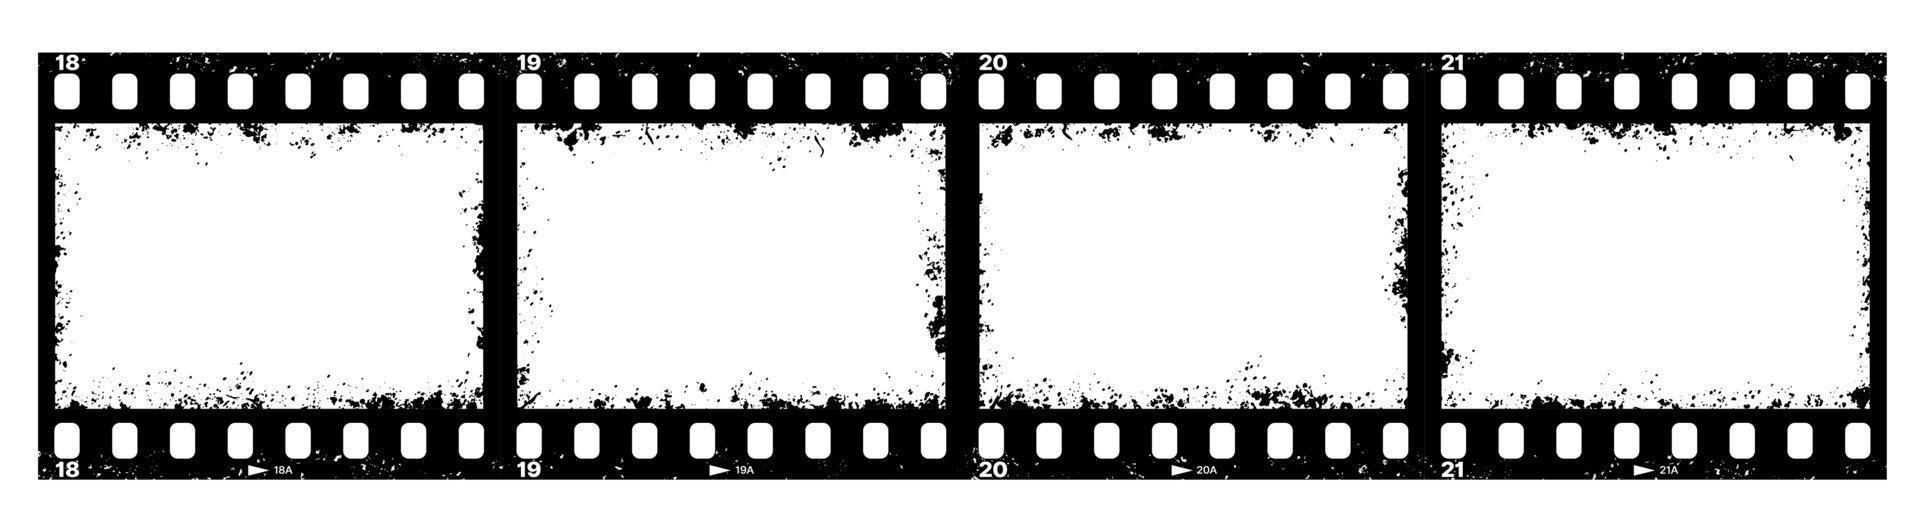 Retro movie grunge film strip, filmstrip texture vector